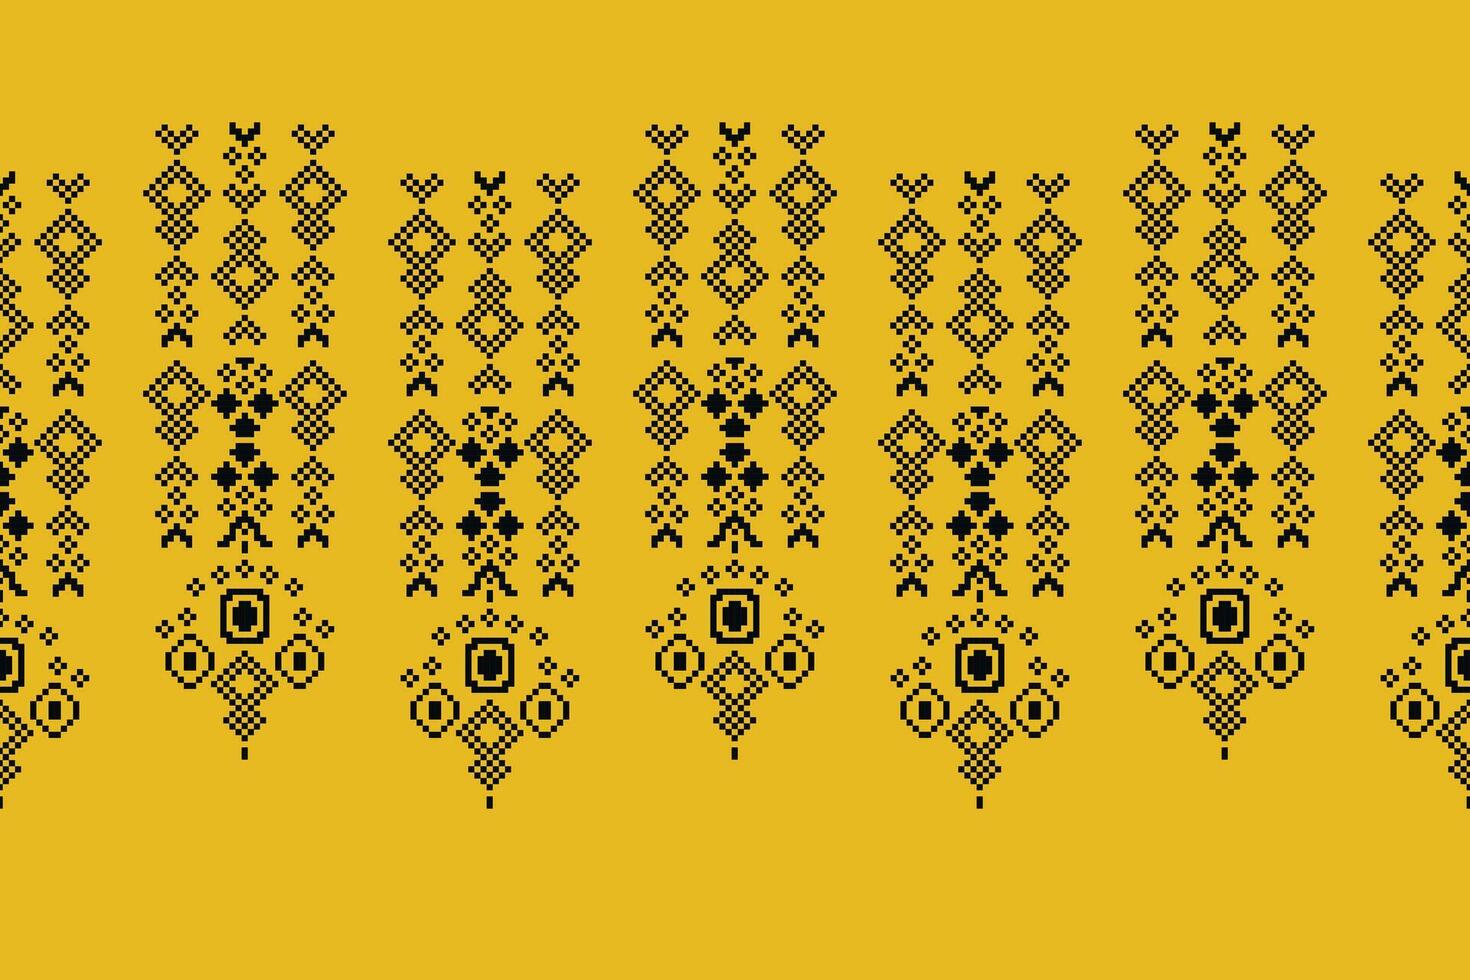 étnico geométrico tecido padronizar Cruz ponto.ikat bordado étnico oriental pixel padronizar amarelo fundo. resumo,vetor,ilustração. textura,vestuário,cachecol,decoração,motivos,seda papel de parede. vetor